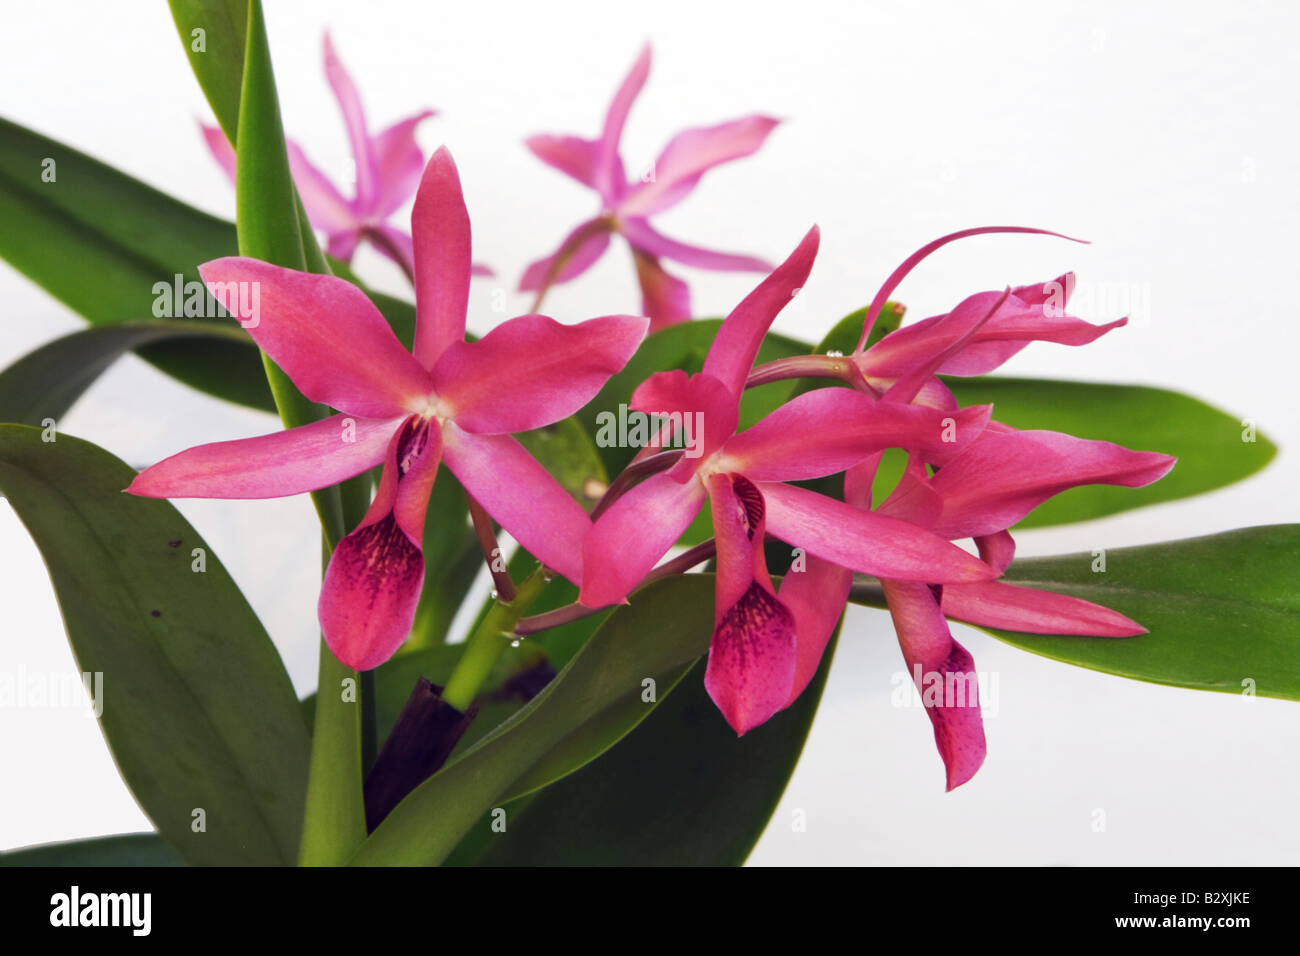 Cattleya guatemalensis un hybride naturel entre orchidées C aurantiaca et C skinneri Banque D'Images